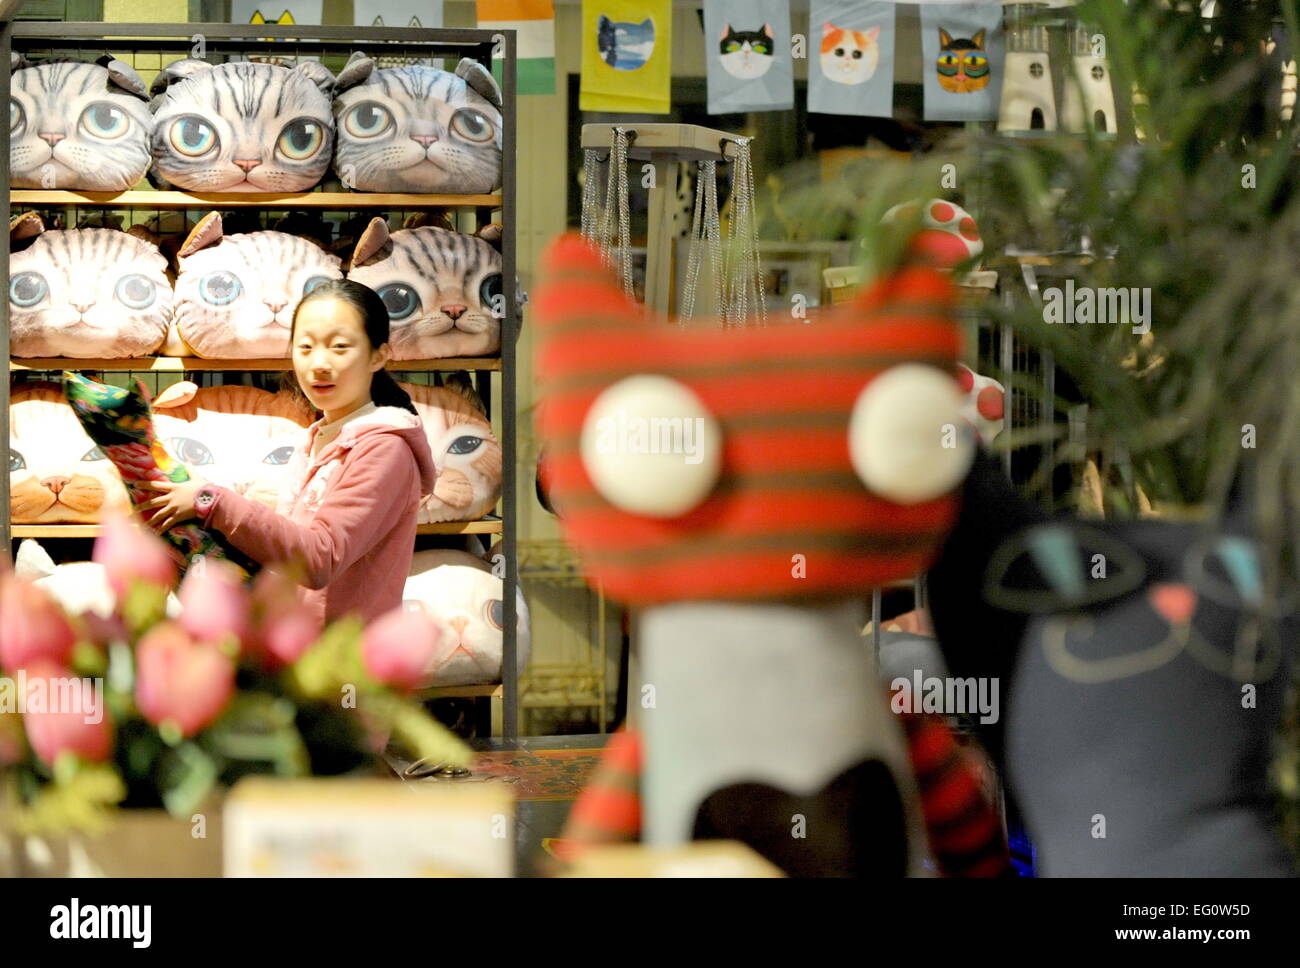 Xiamen, cinese della provincia del Fujian. Xiii Febbraio, 2015. Una ragazza visiti il 'Cat Museum' su Ding'aozai Street a Xiamen, a sud-est della Cina di provincia del Fujian, Feb 13, 2015. Grazie a un rinnovamento urbano piano, Ding'aozai, una volta noto come un antico quartiere della città, è diventata un tema street su cat cultura e un posto che merita una visita. © Lin Shanchuan/Xinhua/Alamy Live News Foto Stock